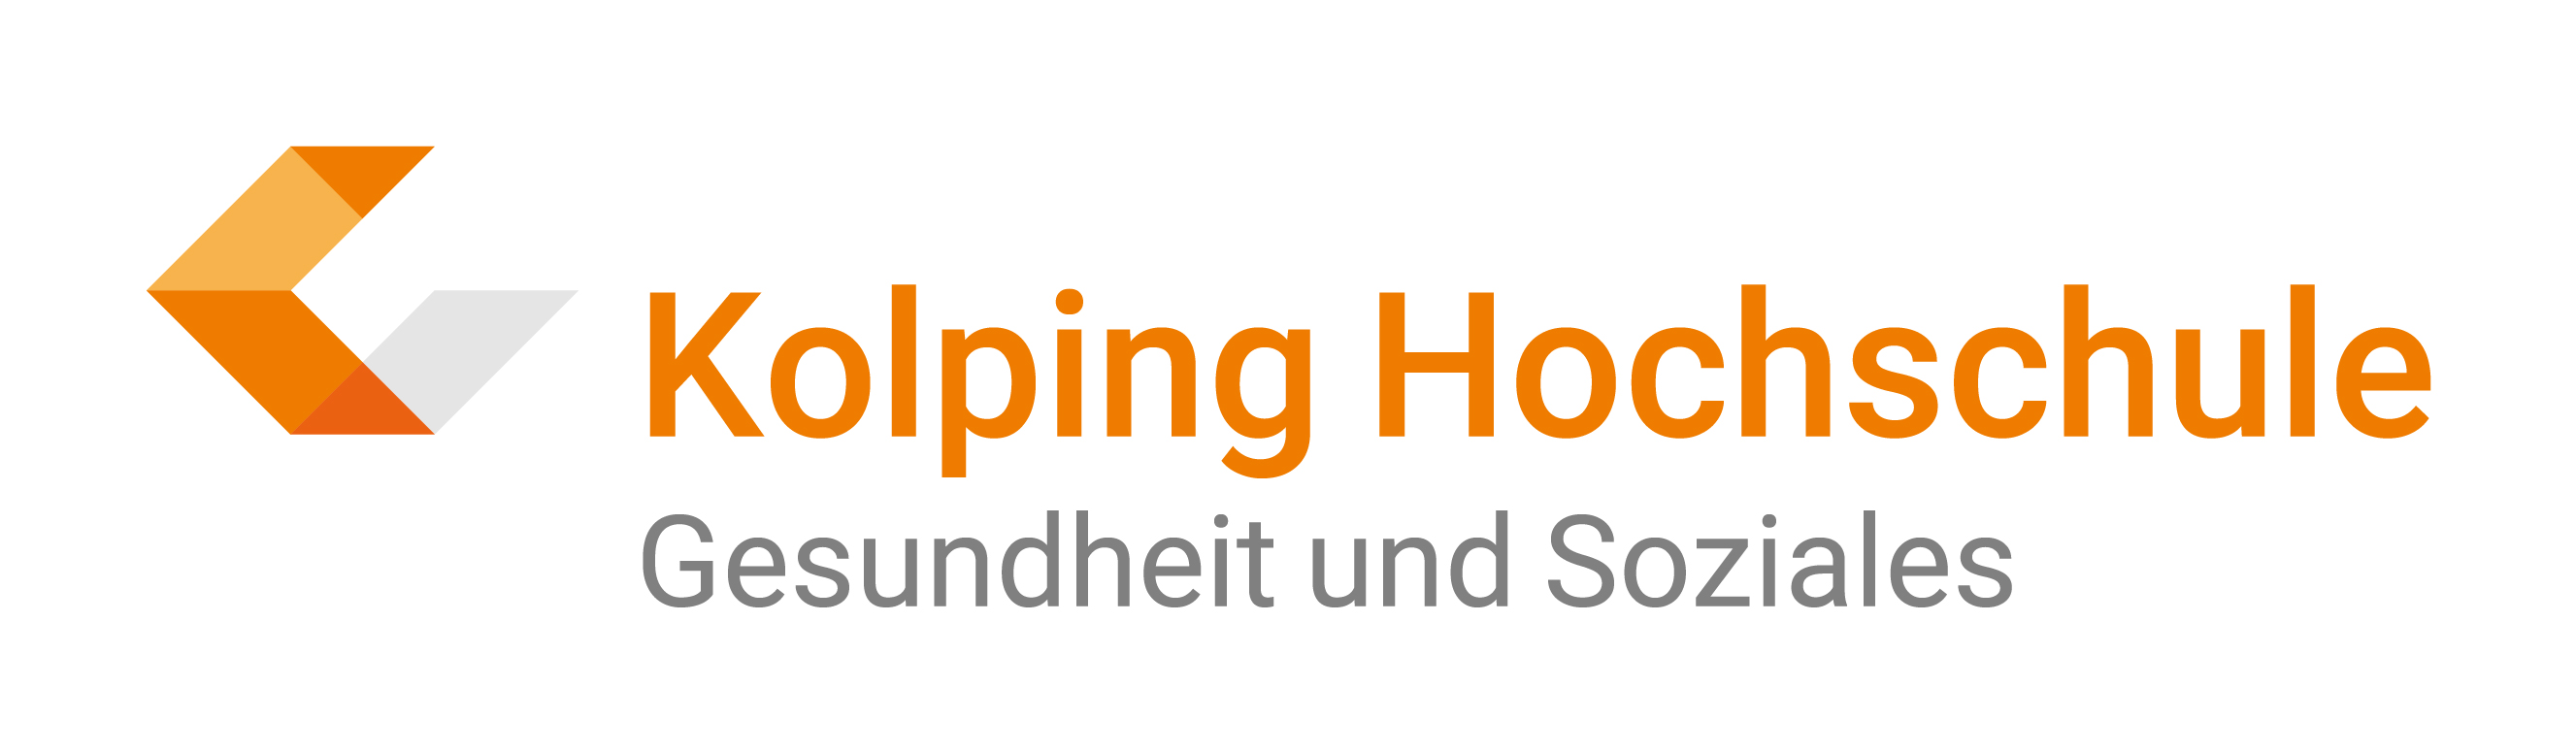 Kolping Hochschule für Gesundheit und Soziales Logo